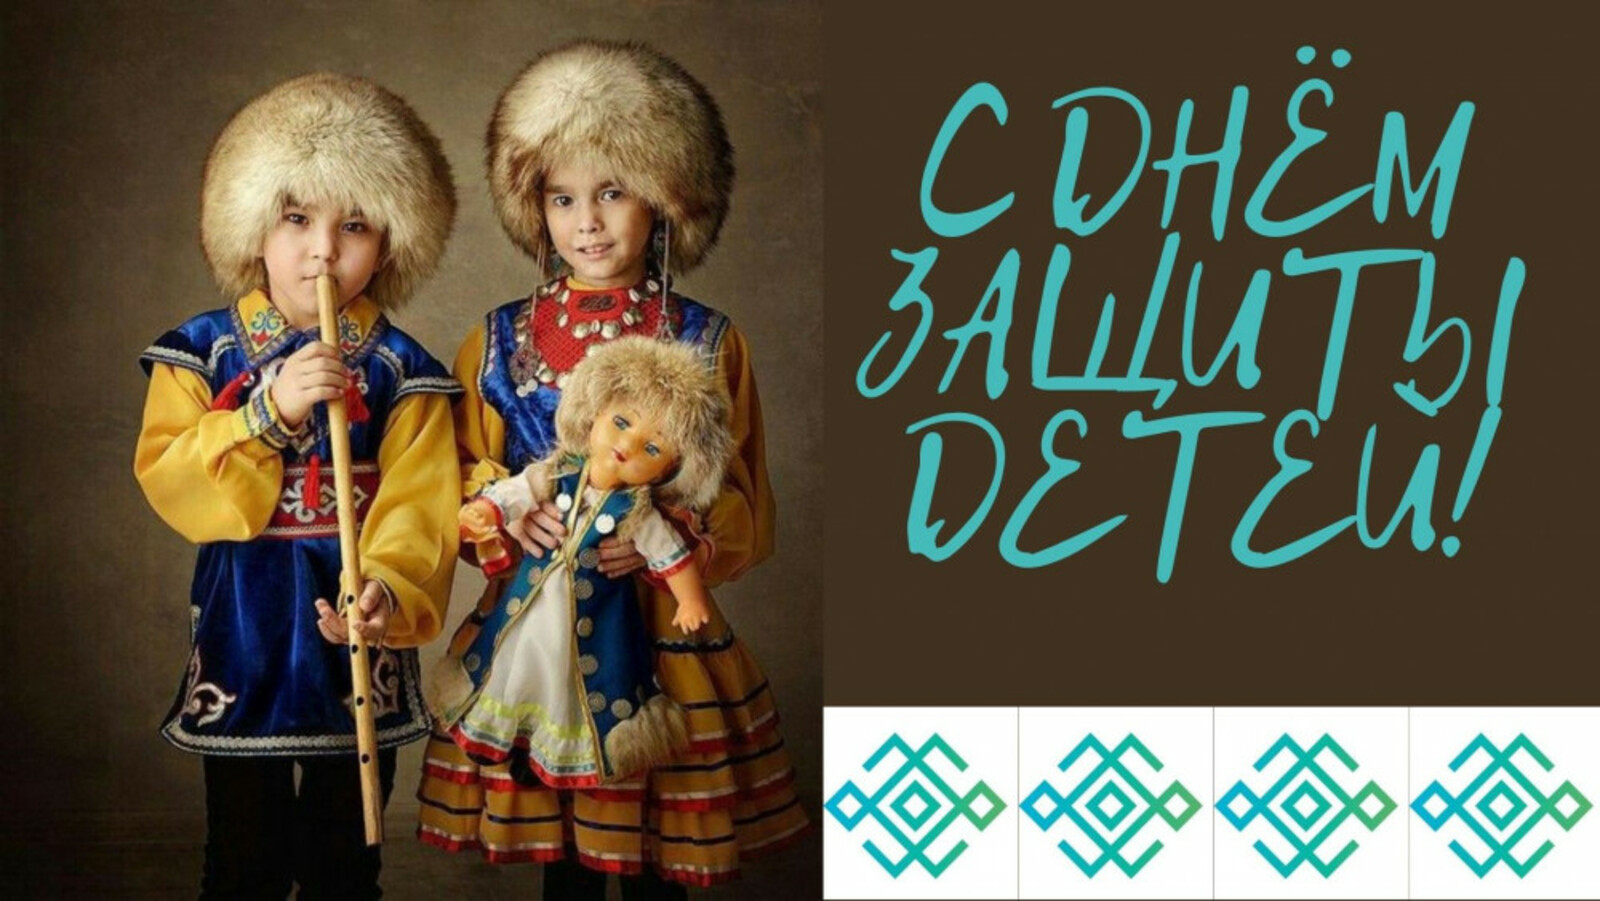 Международный день защиты детей в Башкортостане - программа праздничных мероприятий для всей семьи